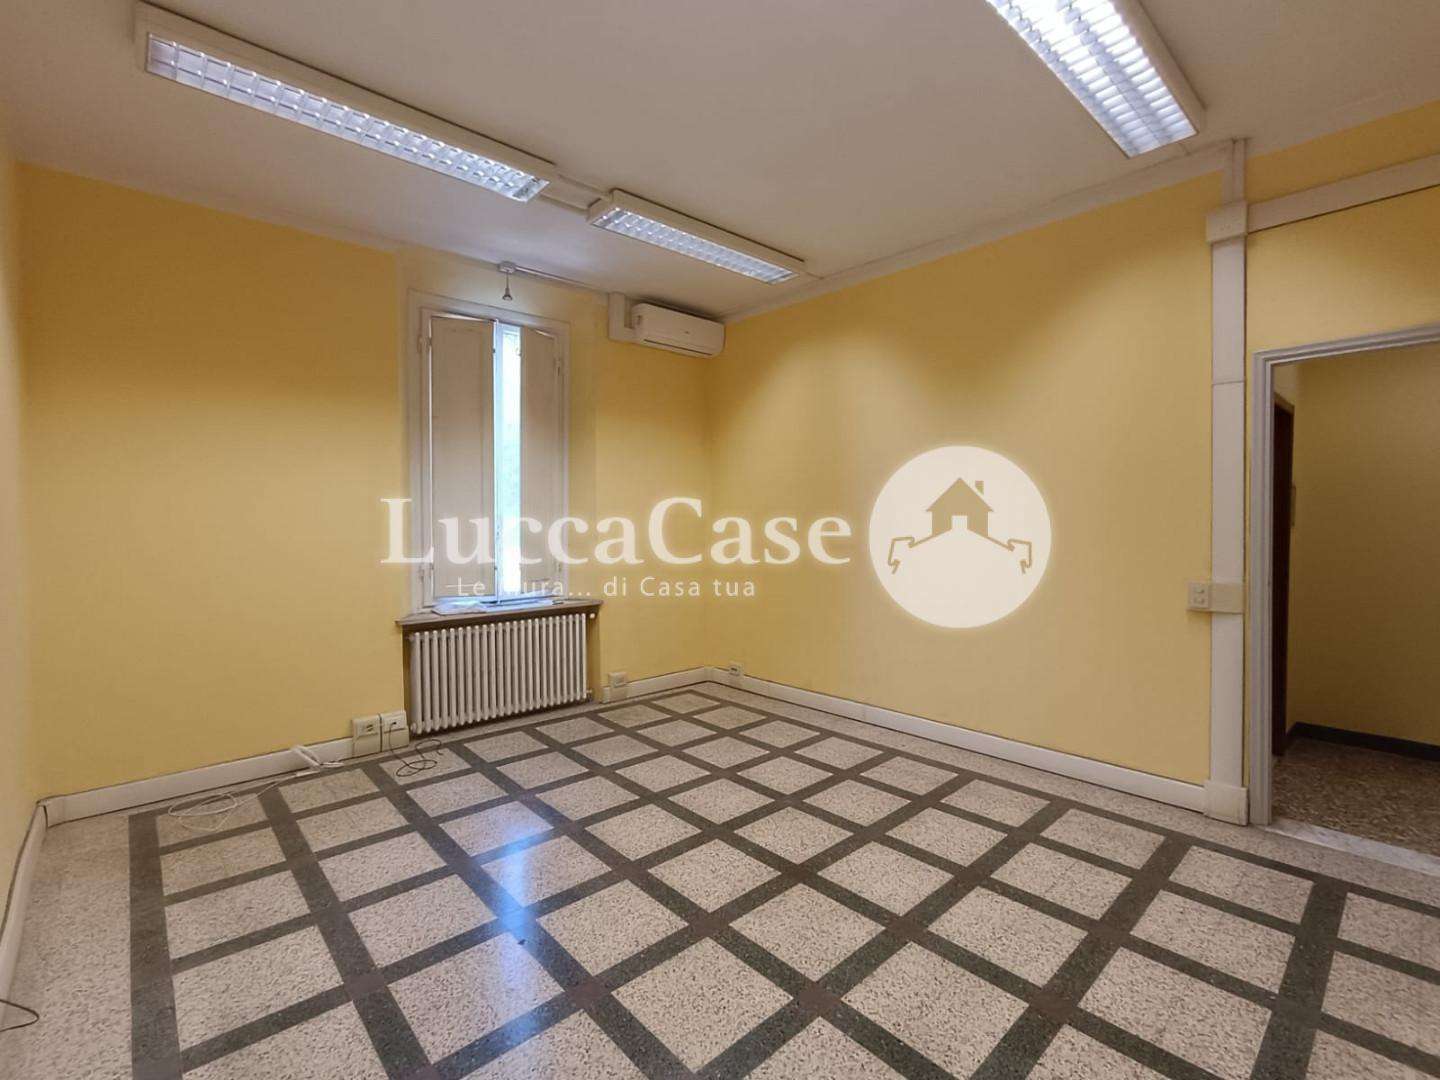 Ufficio in Affitto a Lucca Viale Giuseppe Giusti, 55100